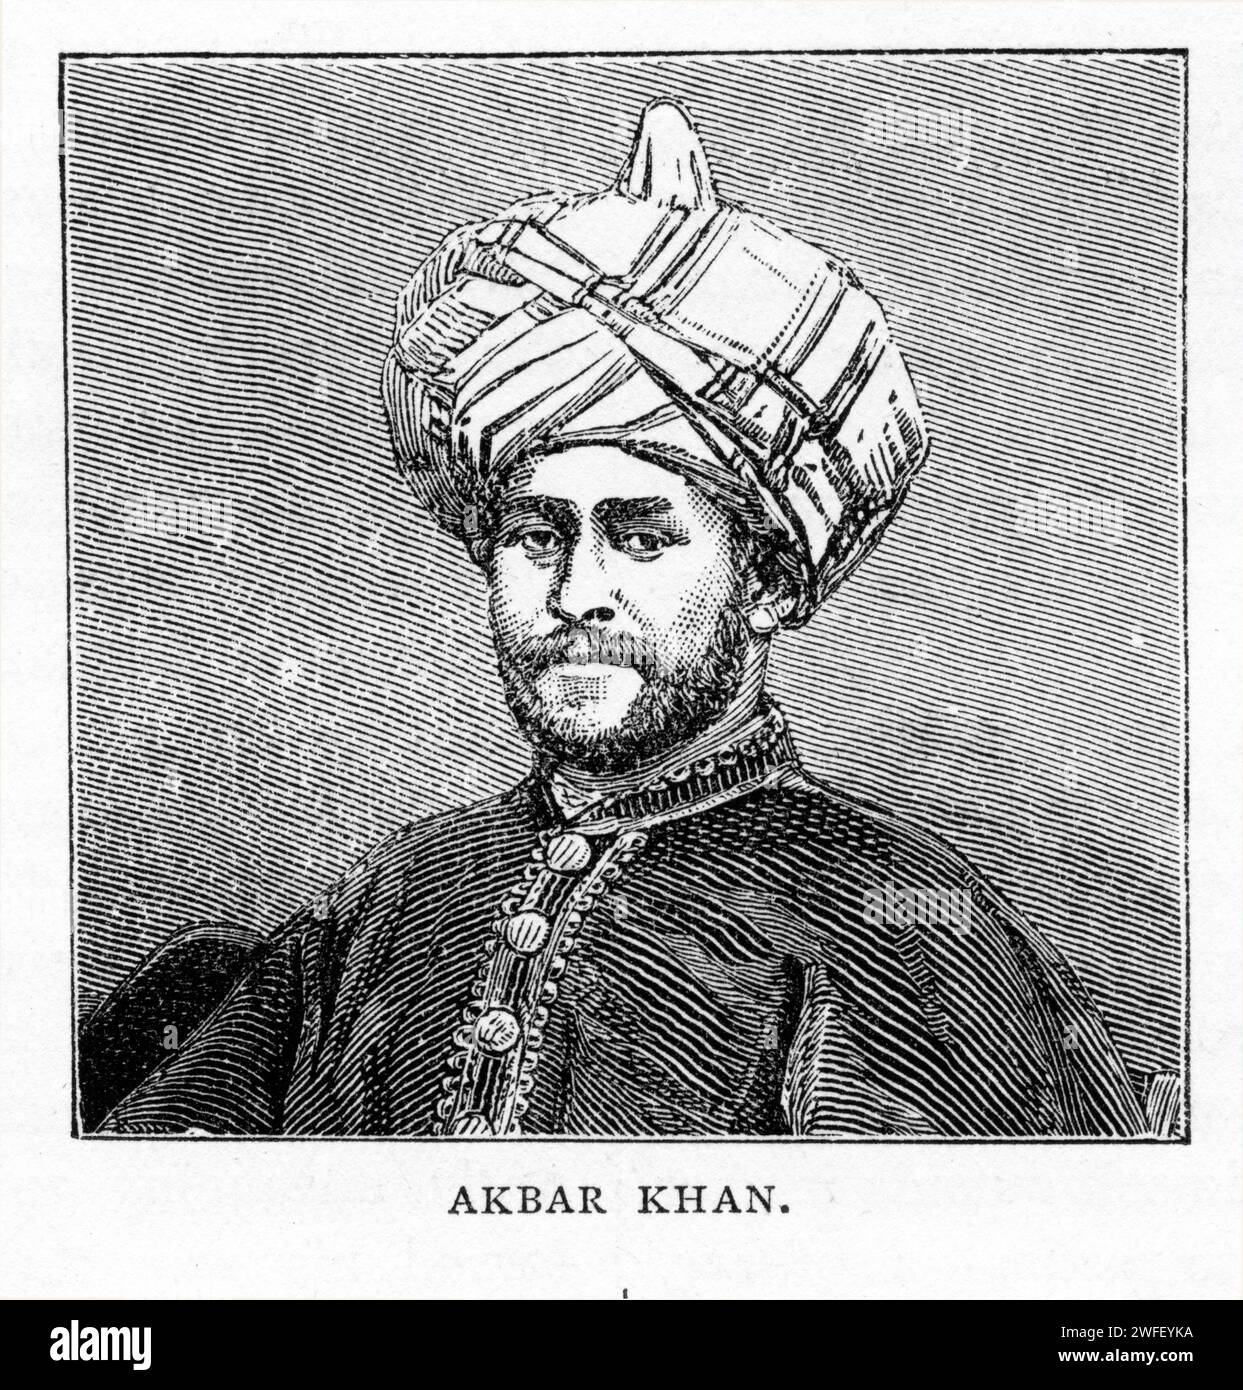 Ritratto di Wazīr Akbar Khān, un principe barakzai, generale, emiro per un anno, e infine wazir/erede apparente di Dost Mohammad Khan fino alla sua morte nel 1847. Pubblicato intorno al 1900 Foto Stock